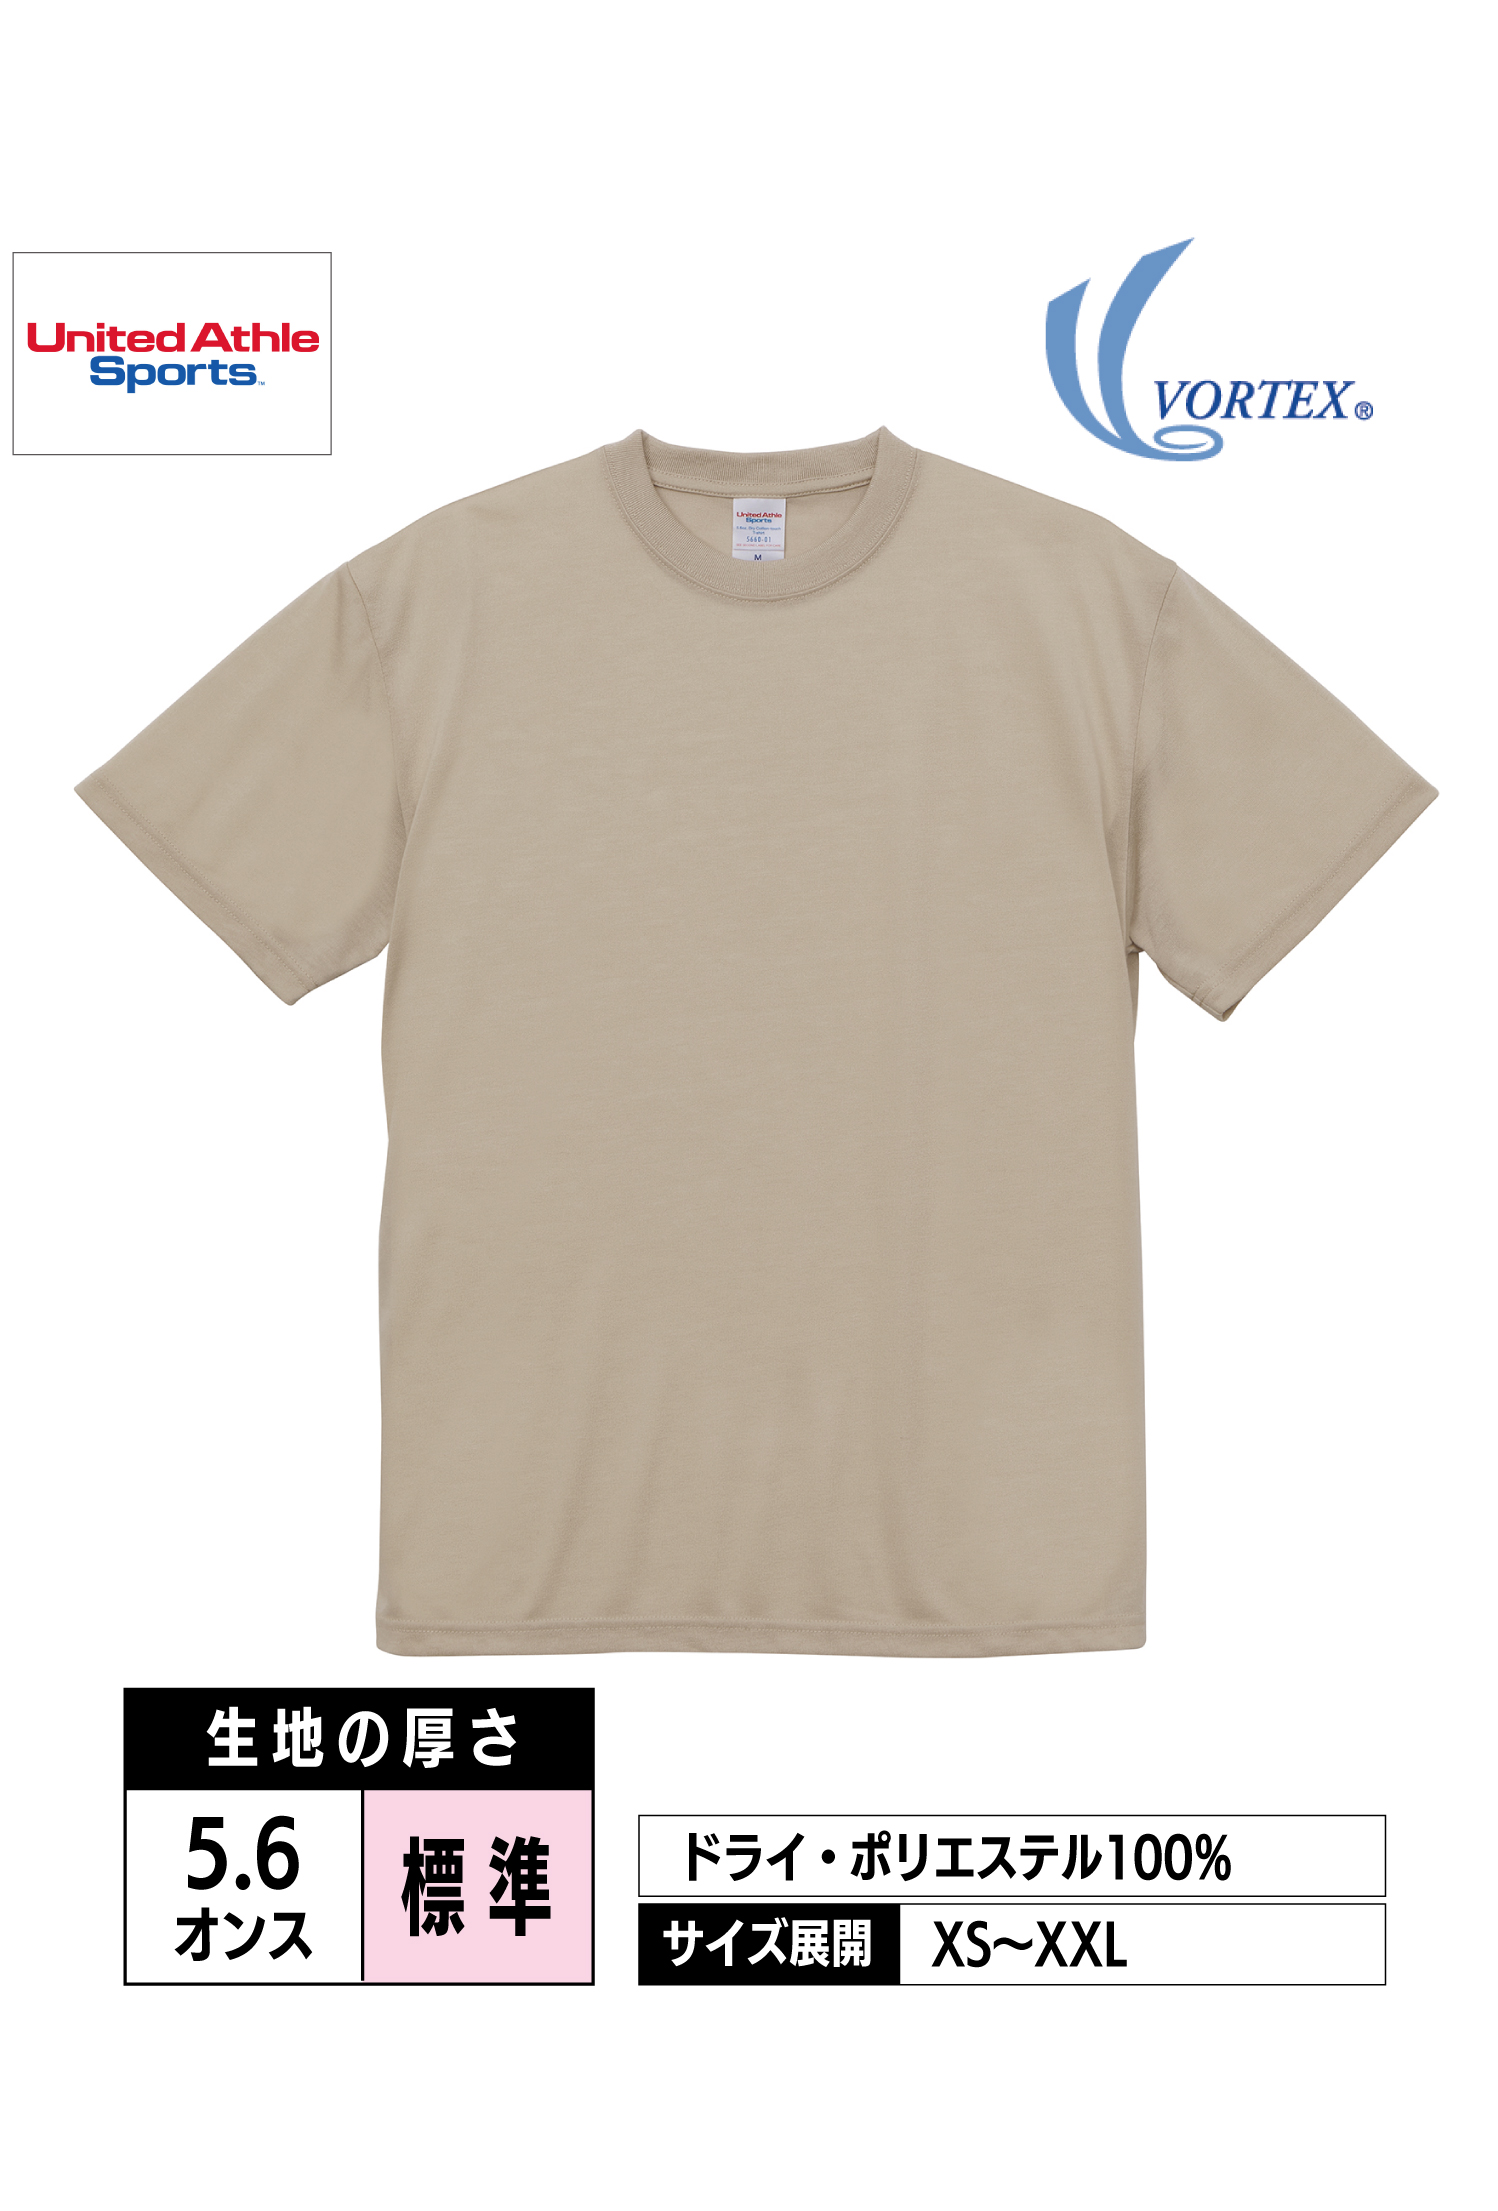 5660-01｜5.6オンス ドライコットンタッチTシャツ（ローブリード）【全7色】United Athle